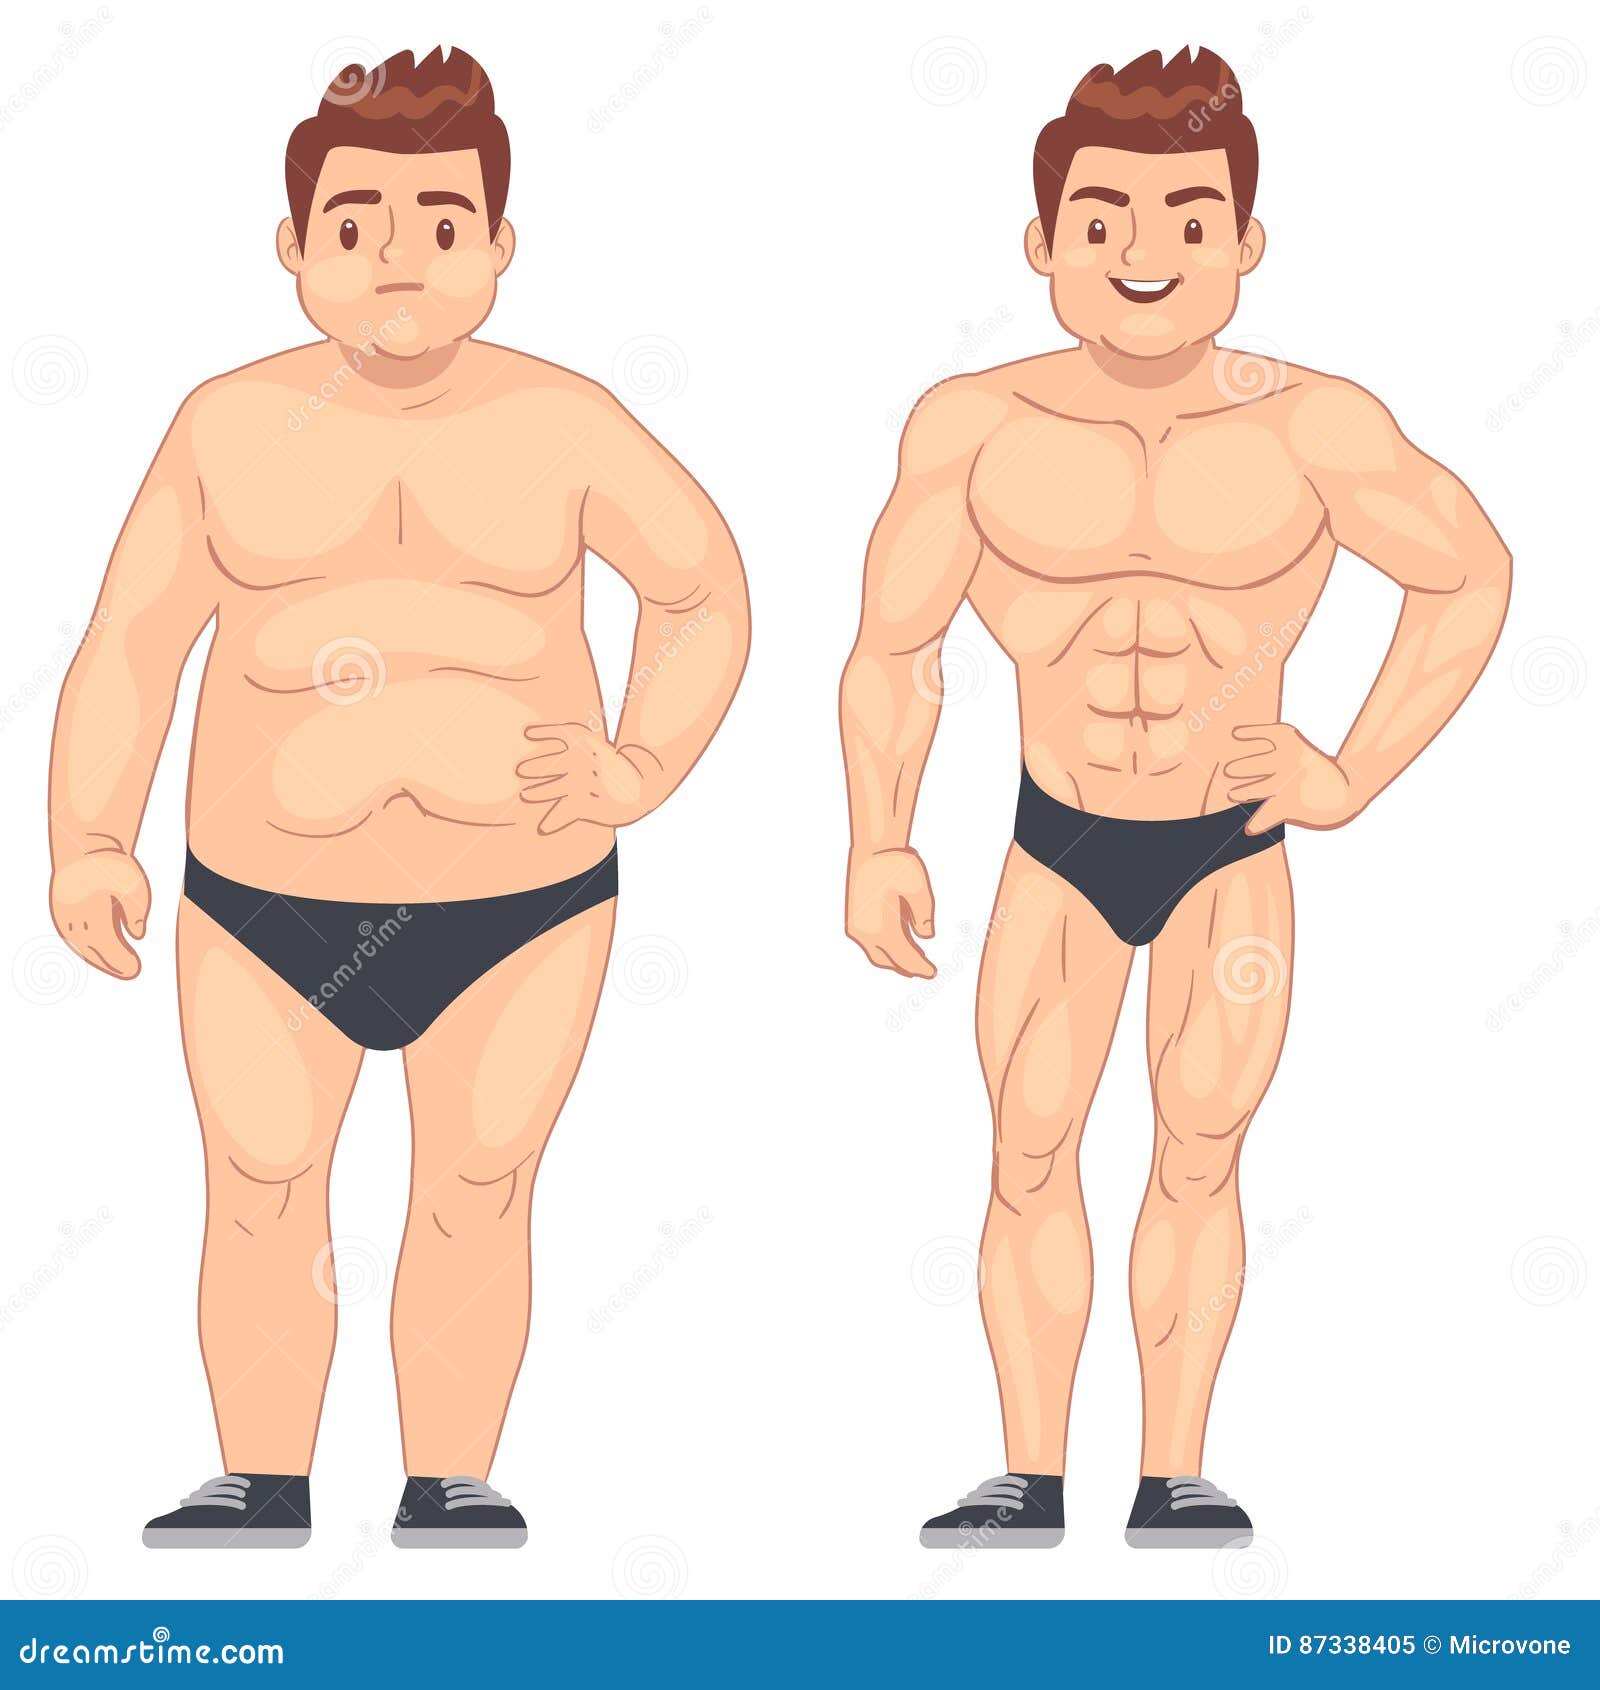 fat loss diet for men